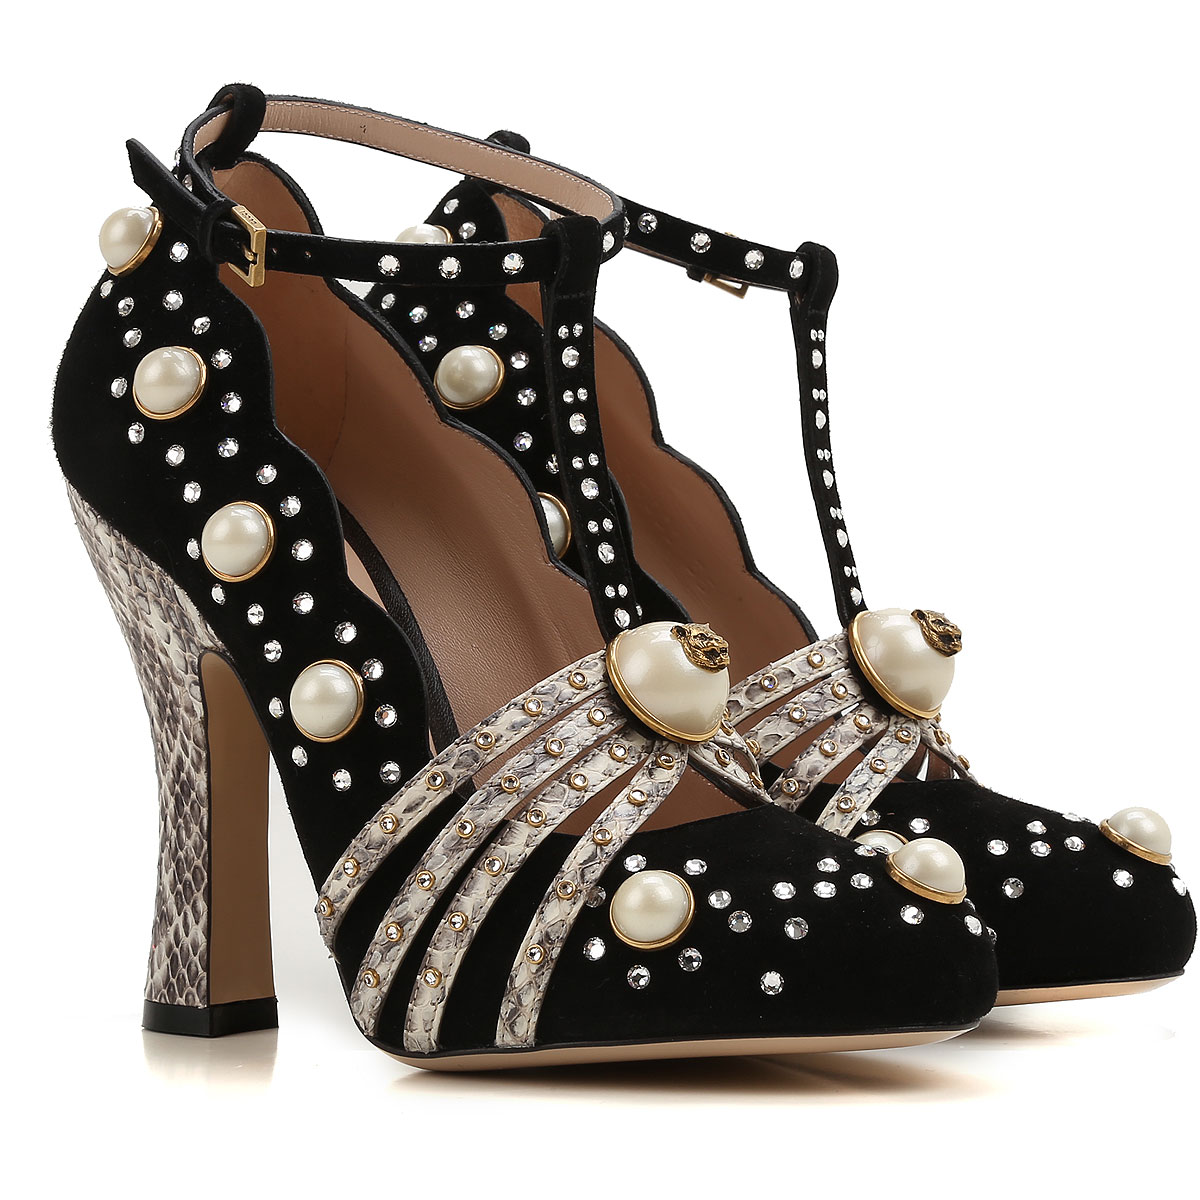 Zapatos de Mujer Gucci, Detalle Modelo: 447601-de840-1068